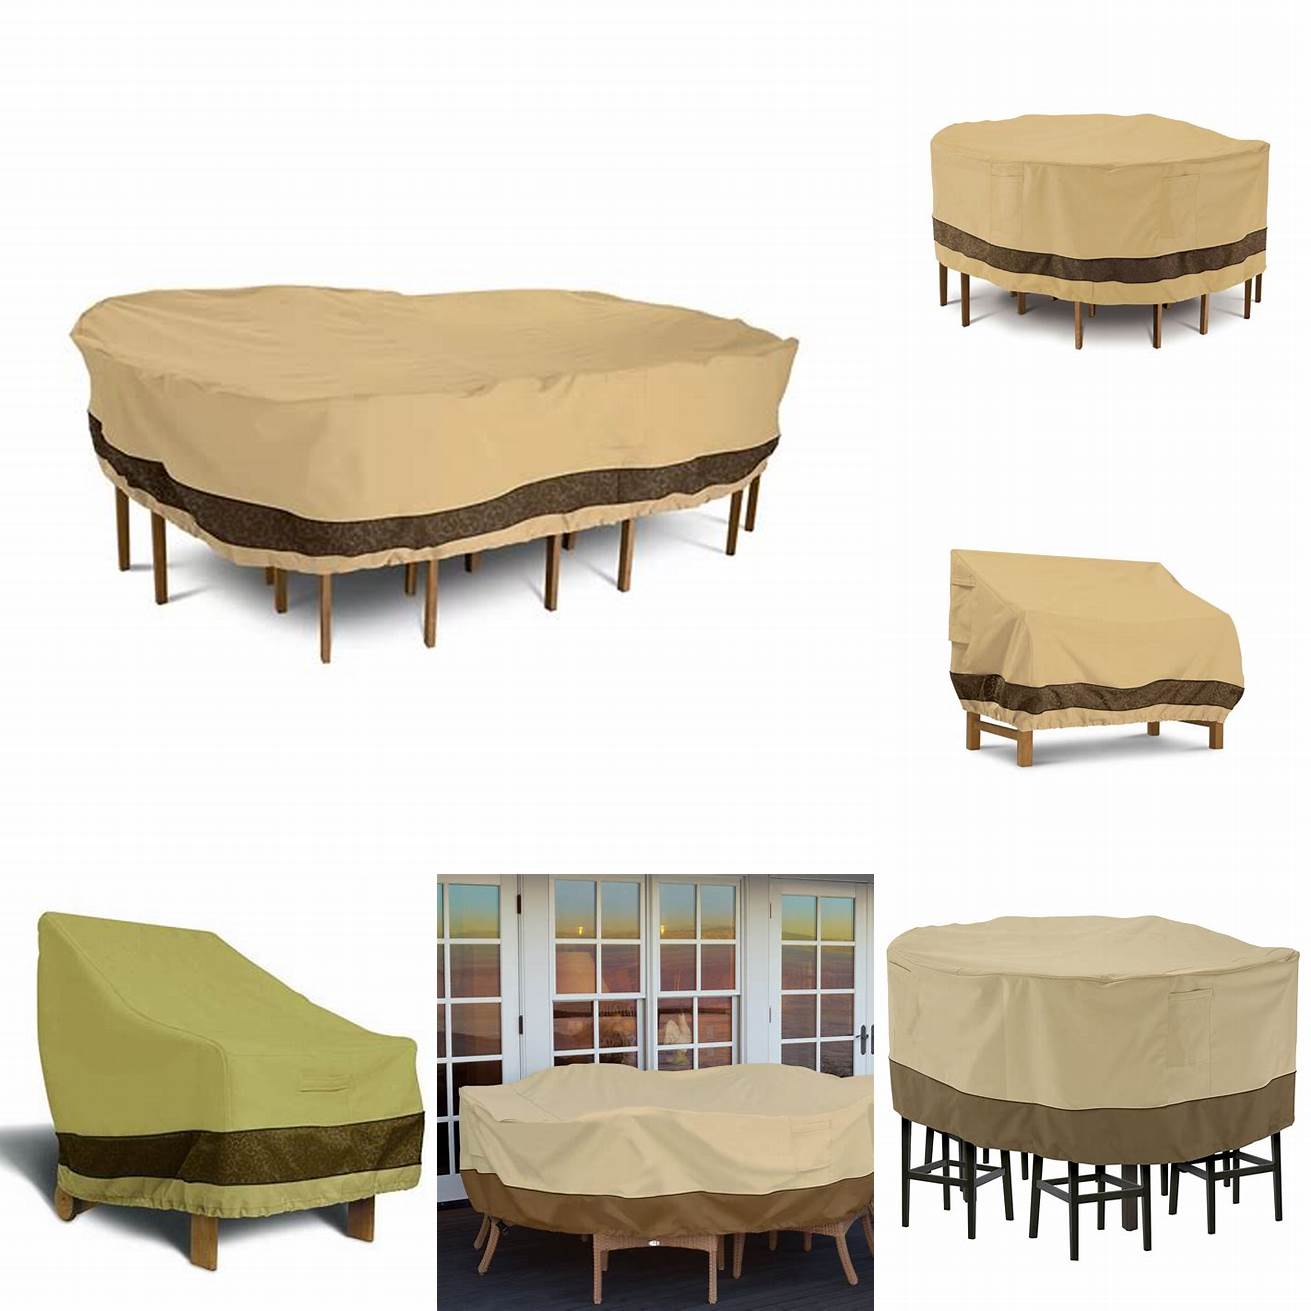 Veranda Elite Patio Furniture Cover